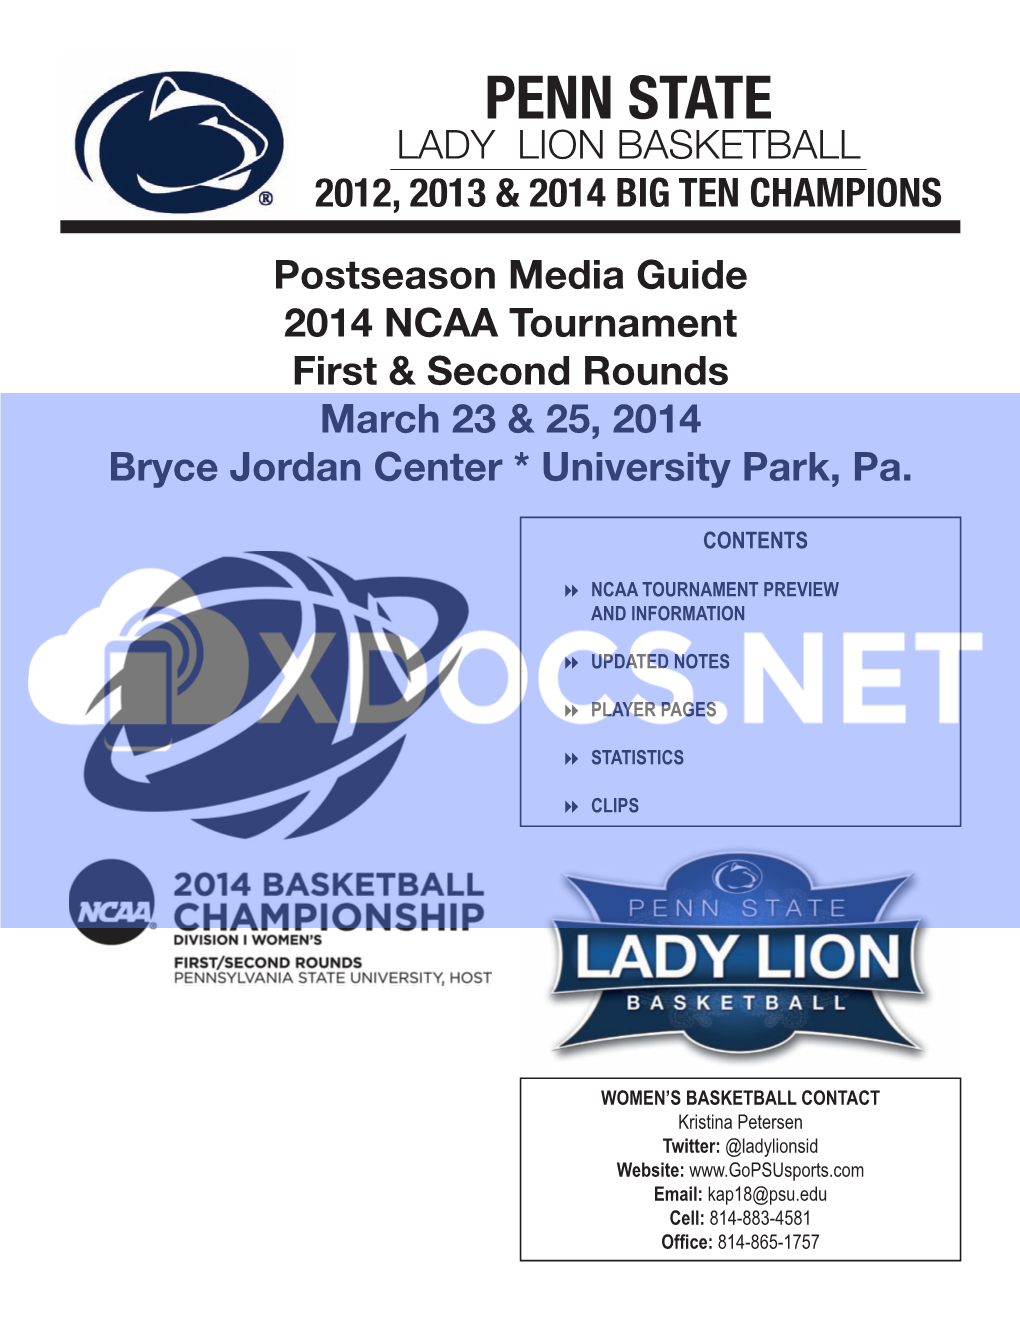 Penn State Lady Lion Basketball 2012, 2013 & 2014 Big Ten Champions